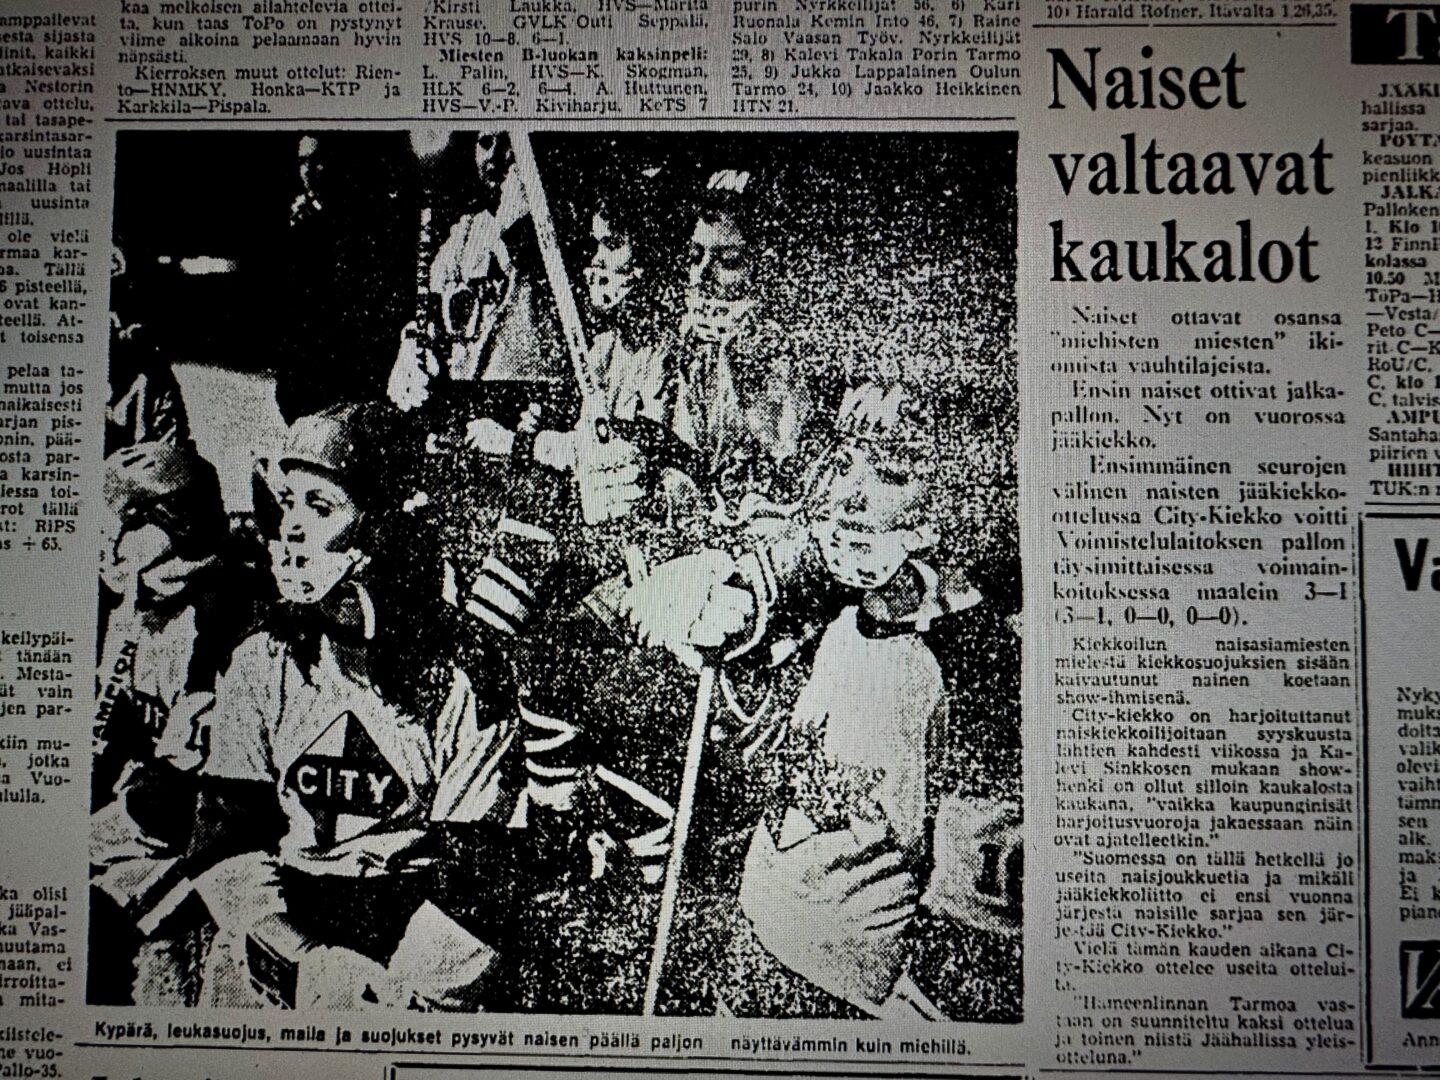 Naiset valtaavat kaukalot kirjoitti Helsingin Sanomat 70-luvulla.